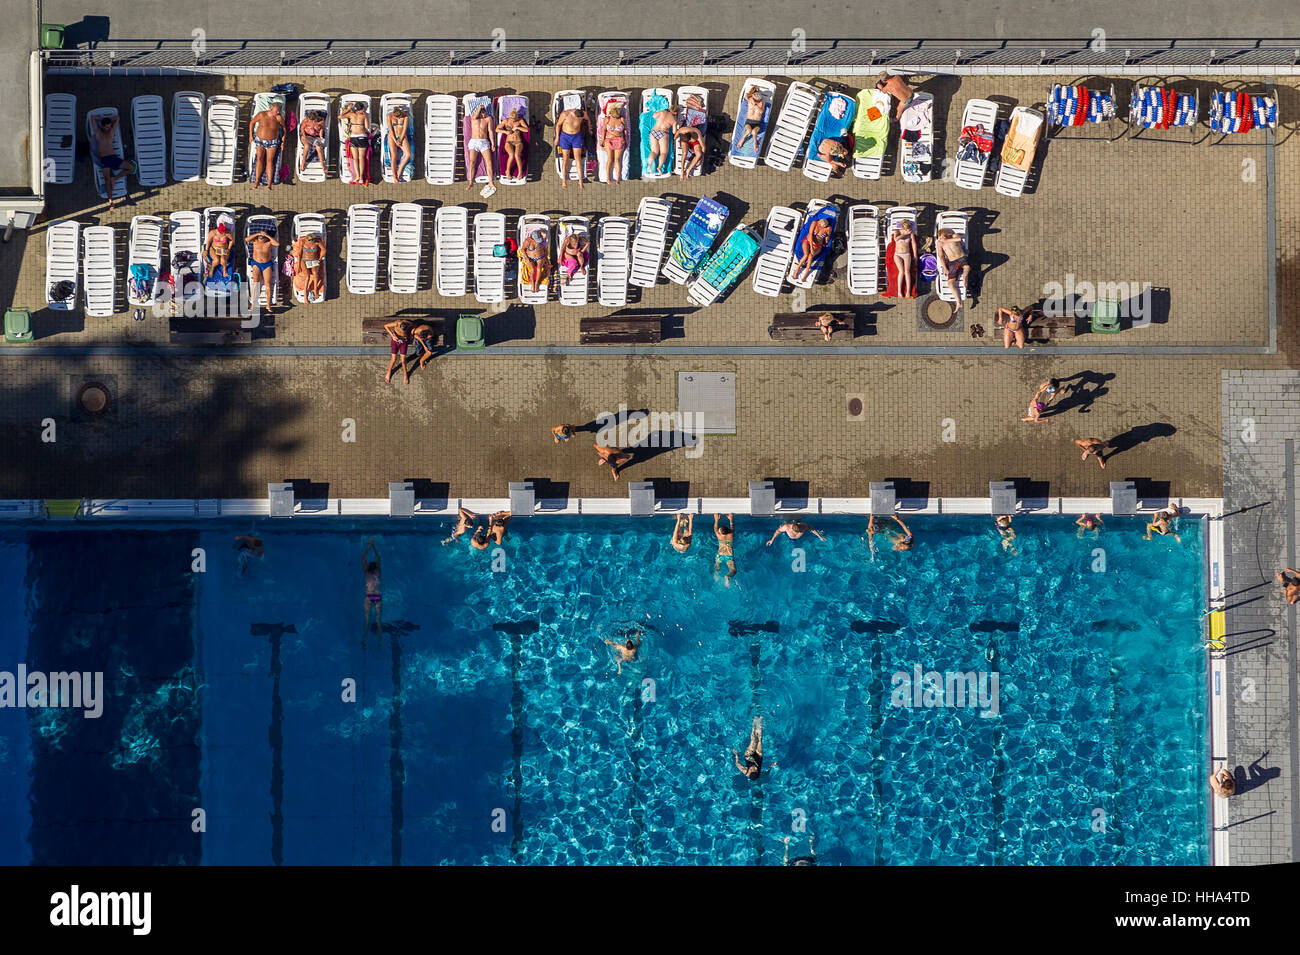 Freibad Annen, piscina pubblica e prendere il sole, nuotatori, tempo libero, Witten-Annen, Witten, zona della Ruhr, Renania settentrionale-Vestfalia, Germania, Foto Stock